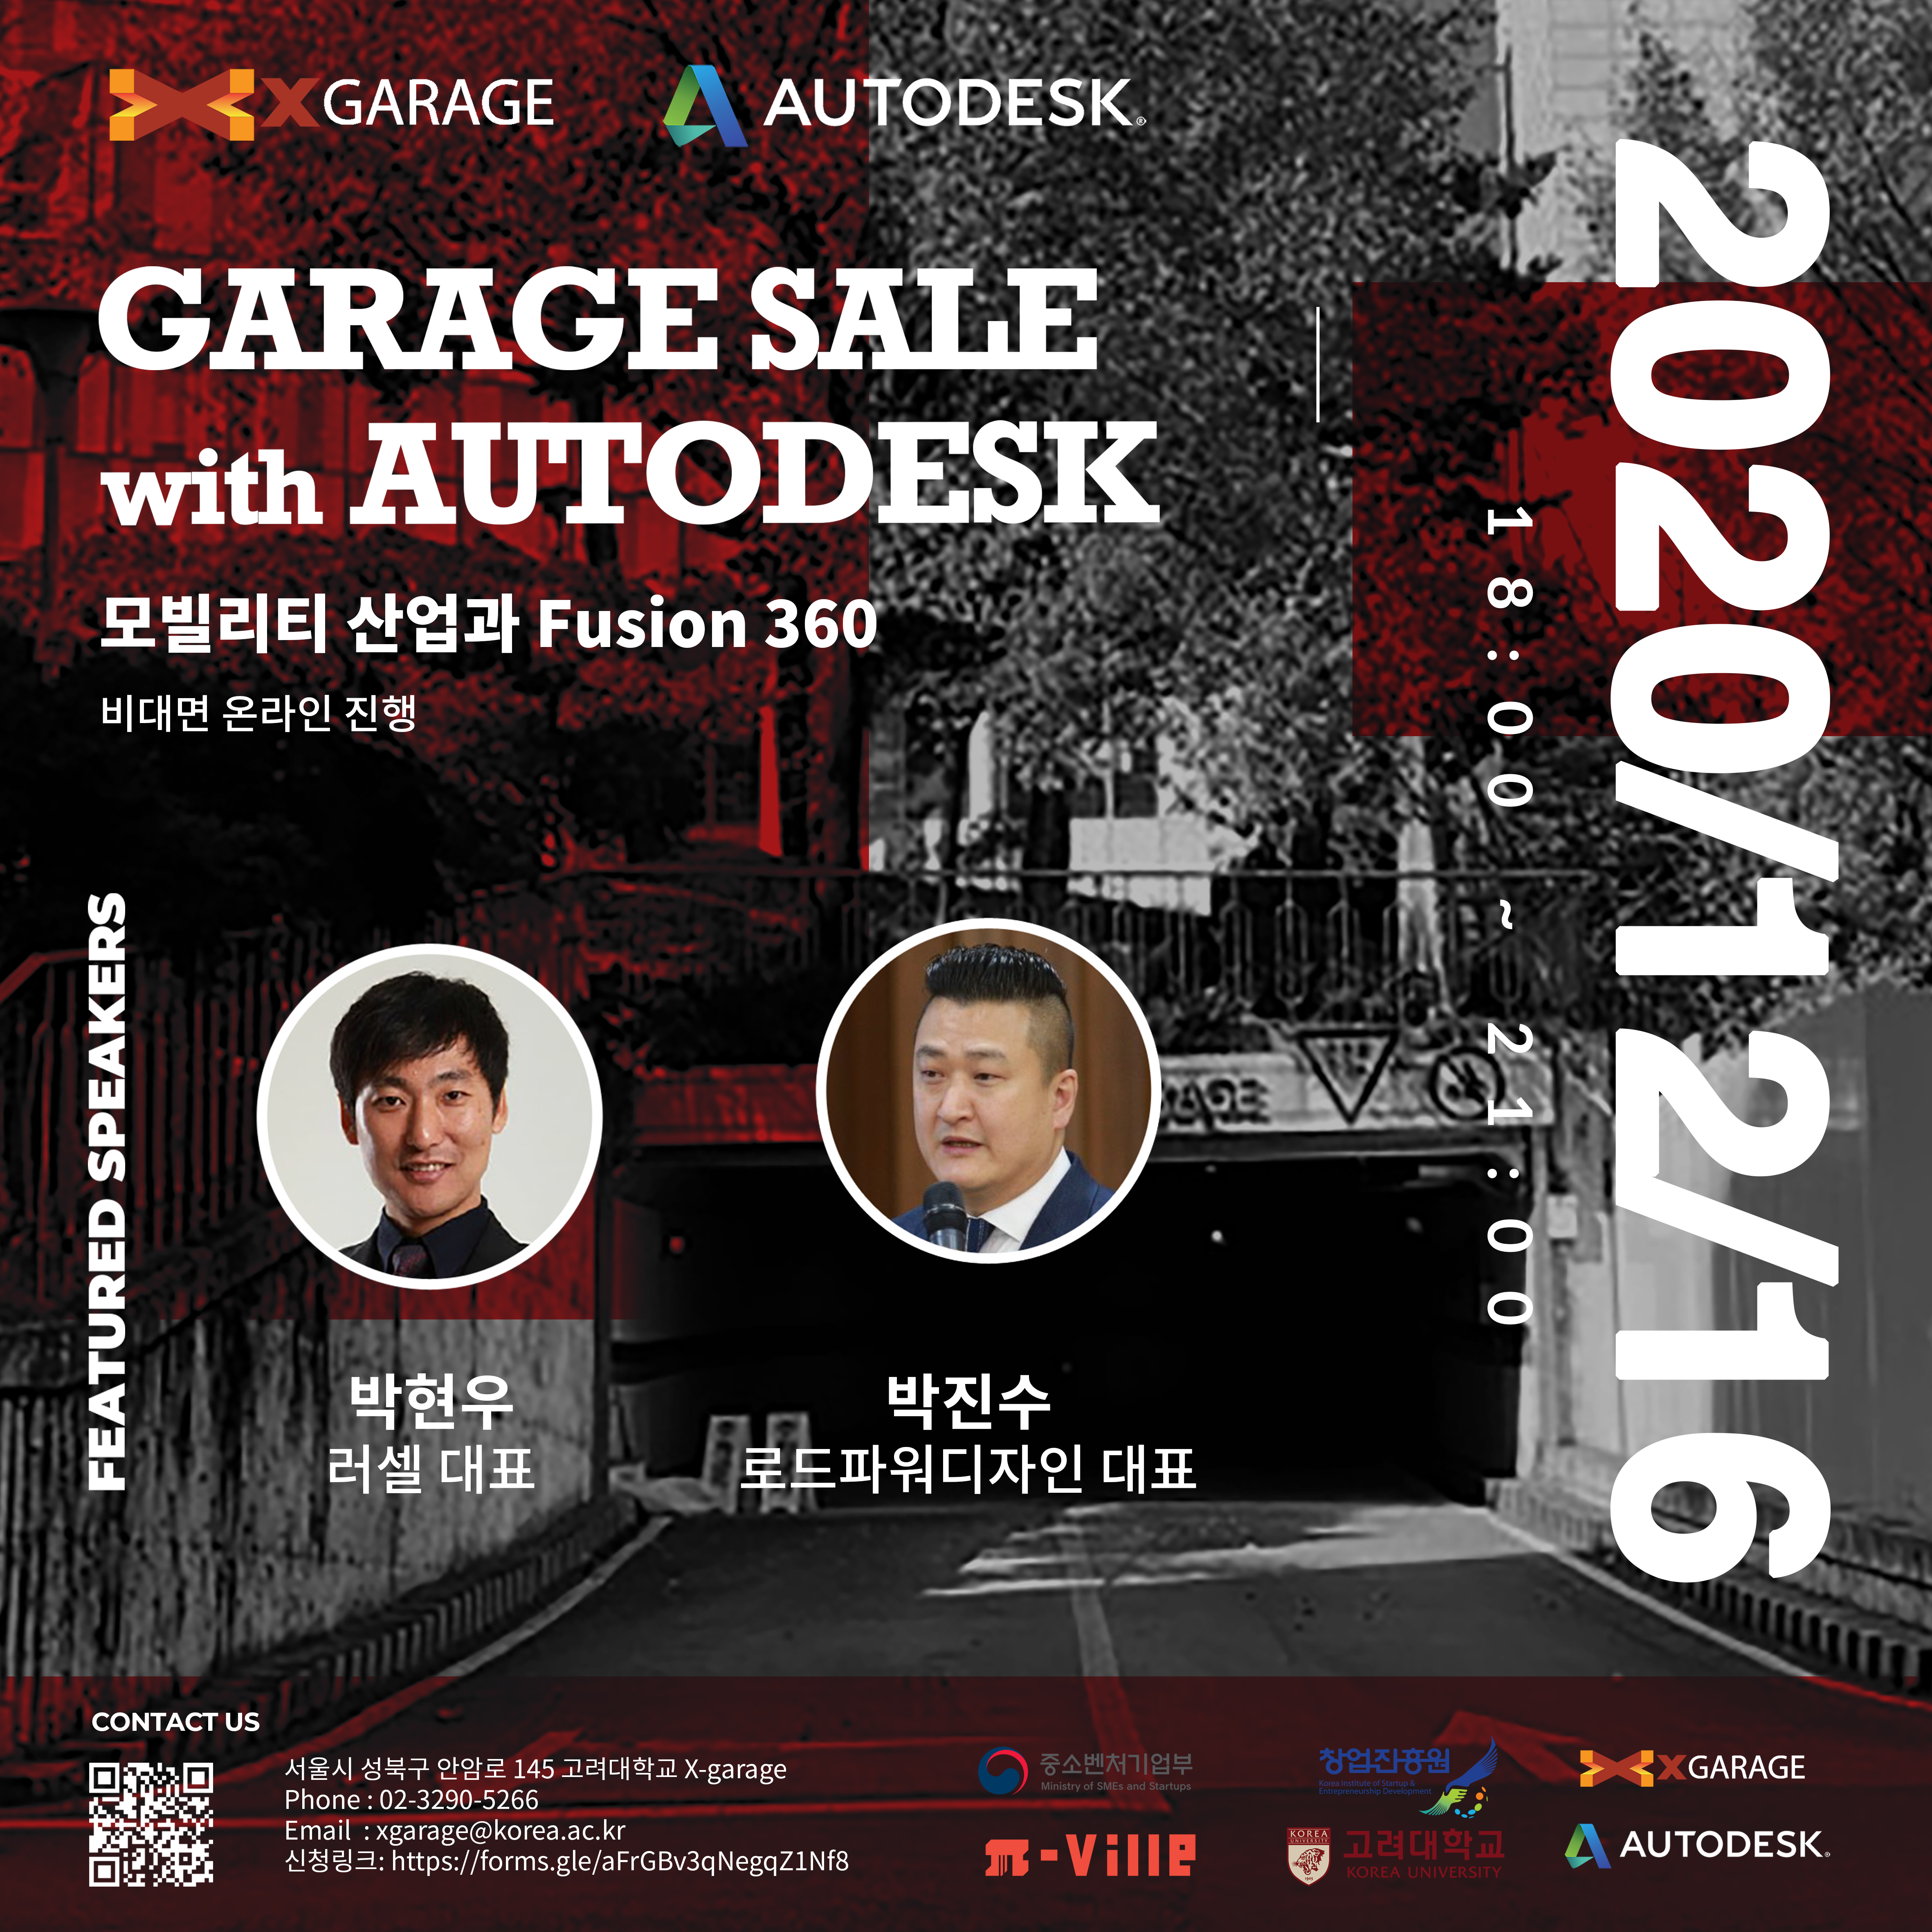 GARAGE SALE with Autodesk - 모빌리티 산업과 Fusion 360